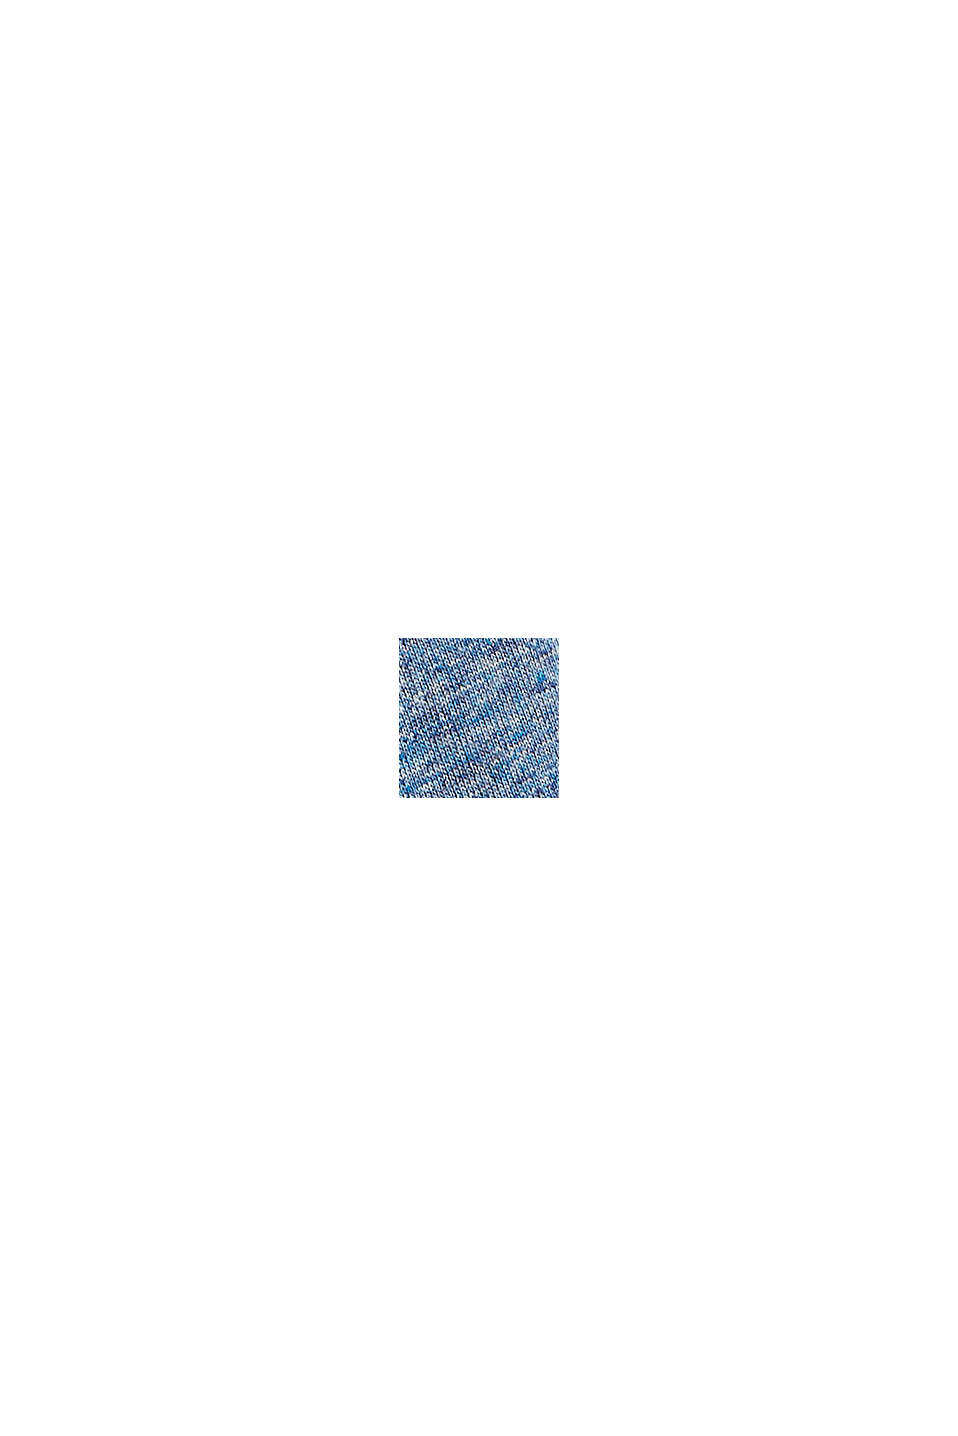 Jersey-Longsleeve aus 100% Baumwolle, BLUE, swatch